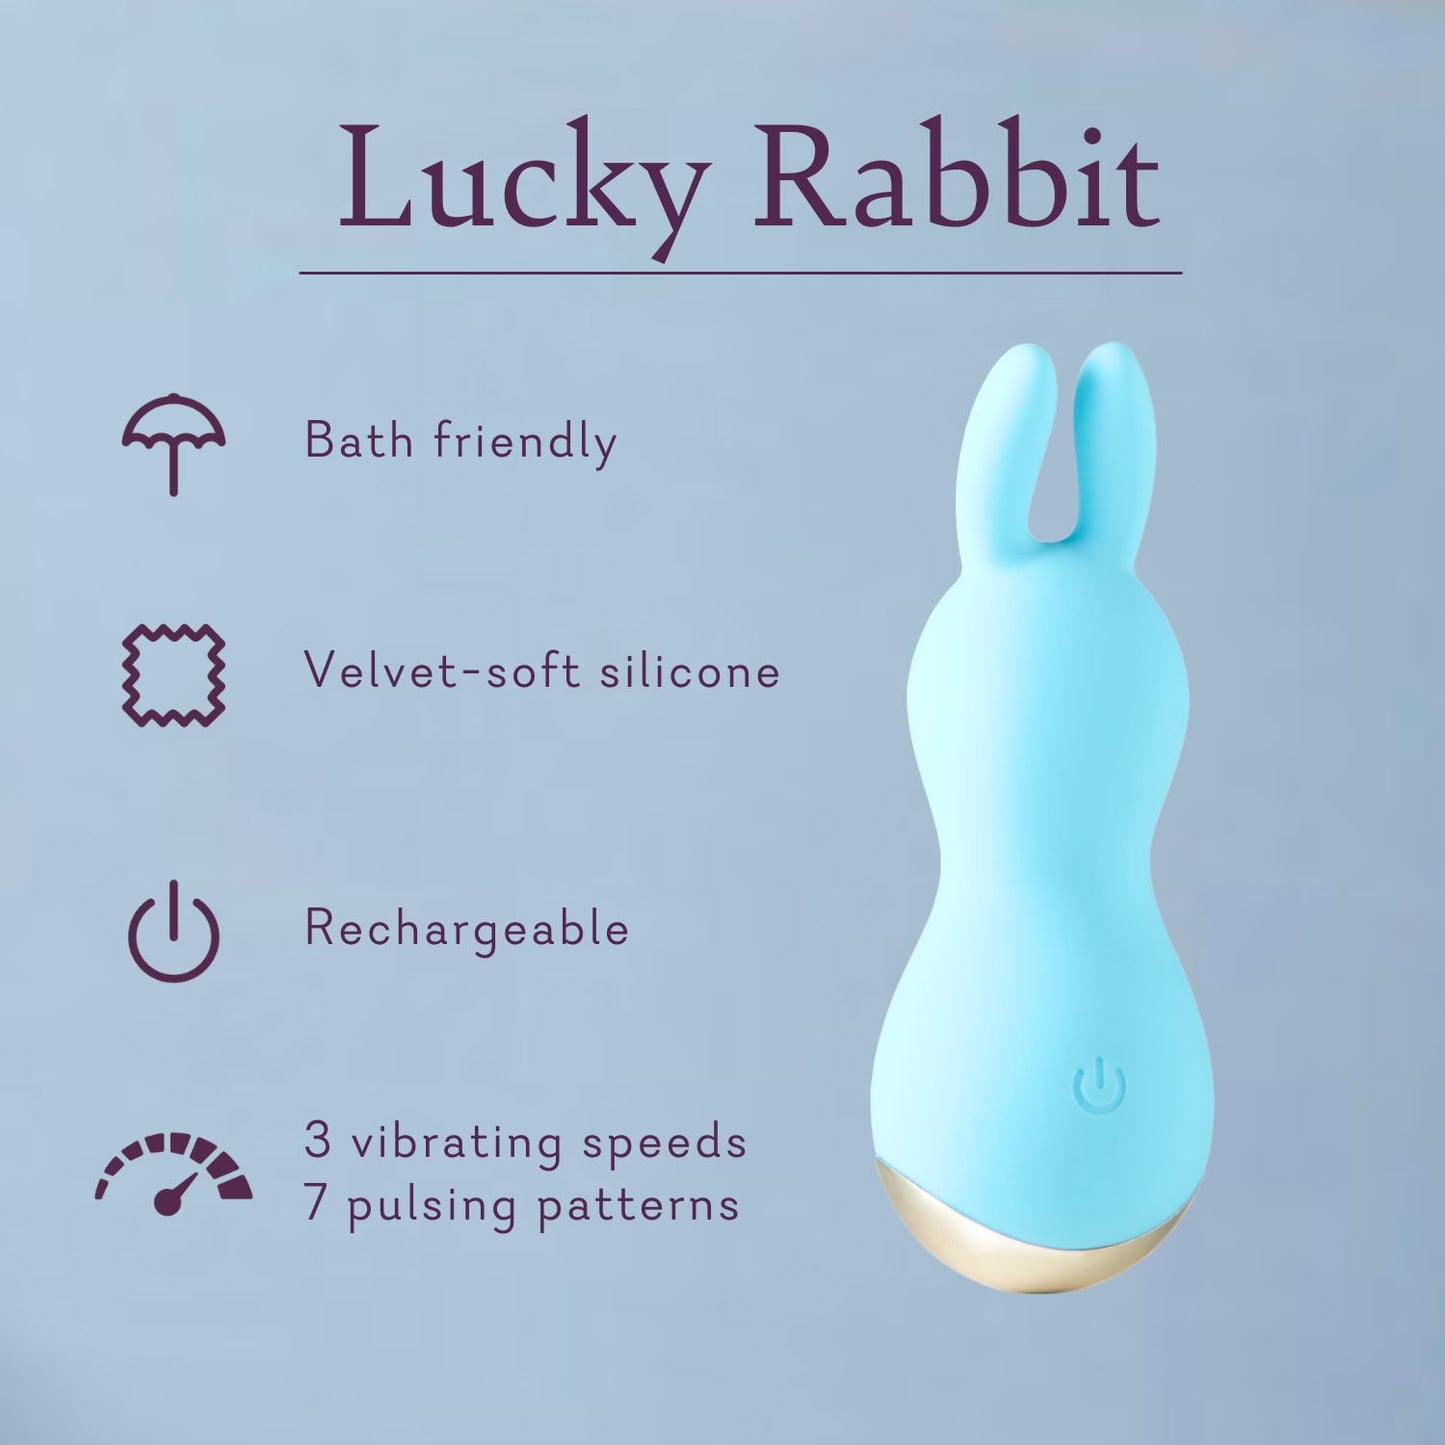 Conejo afortunado